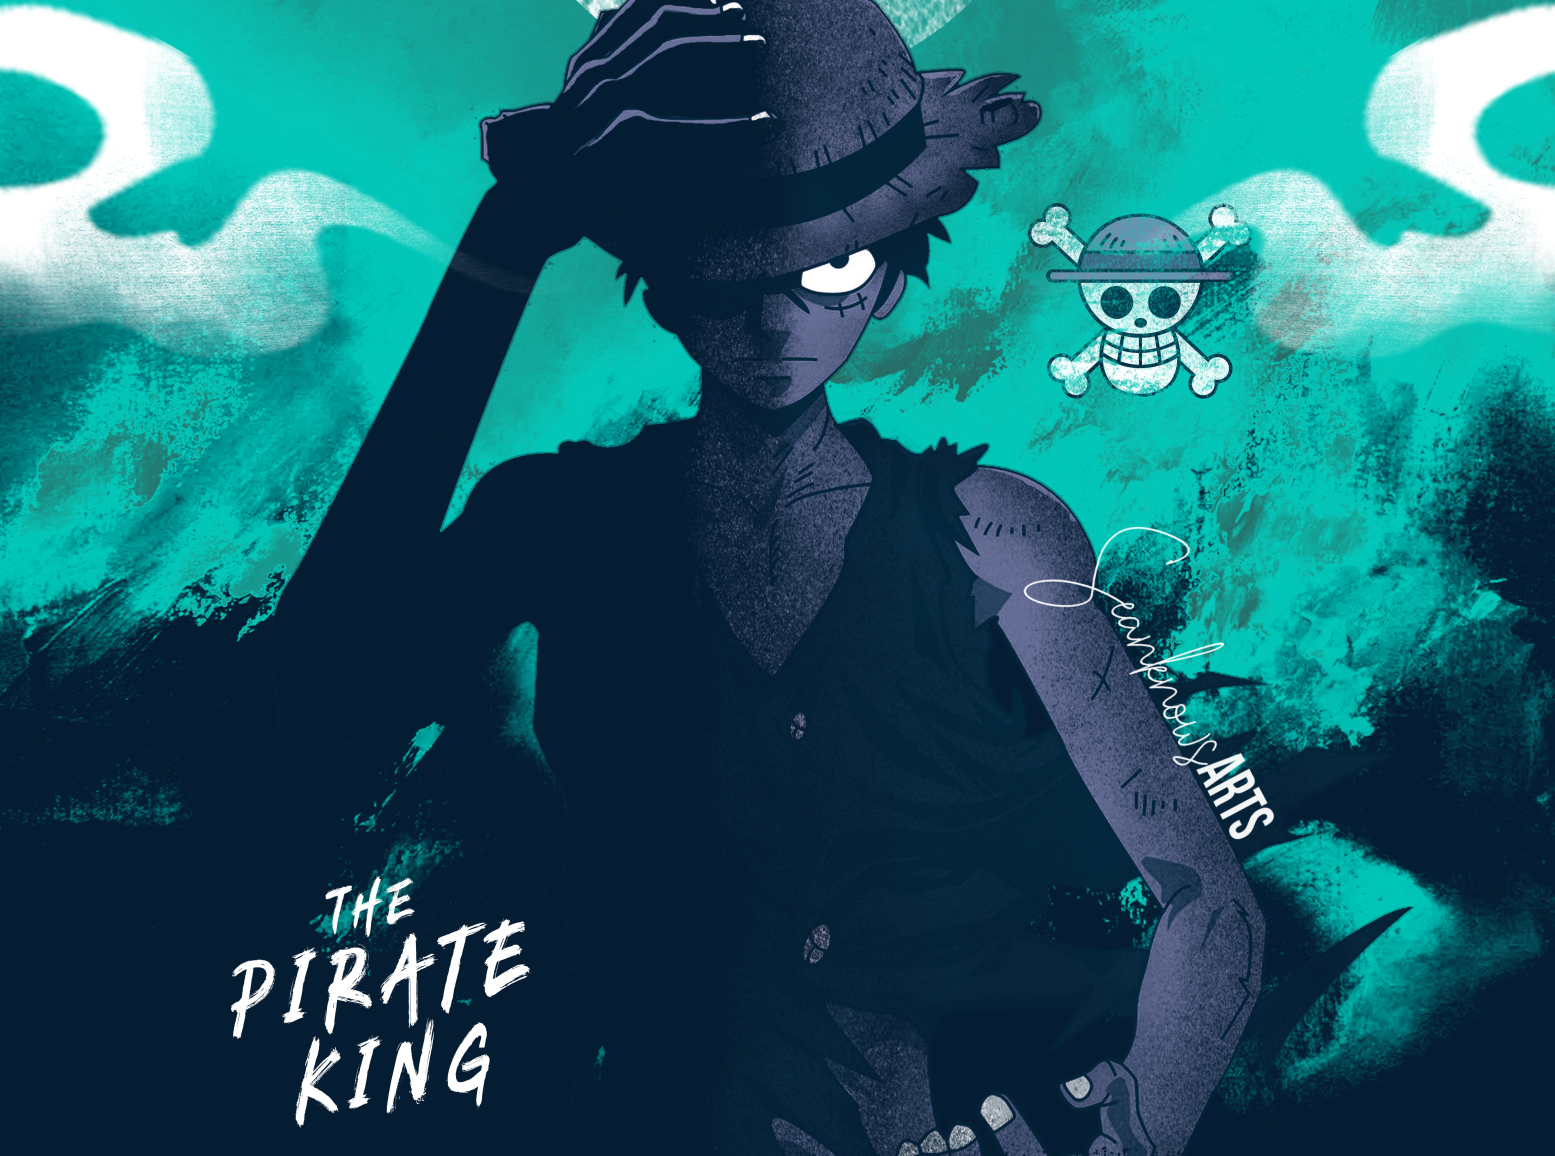 Pirate King: Trong thế giới One Piece, ai sẽ trở thành Pirate King? Hãy xem những hình ảnh phiêu lưu đầy kịch tính của Monkey D. Luffy và đồng đội mà có liên quan đến chủ đề này. Cùng trải nghiệm những cuộc phiêu lưu đầy hấp dẫn và chiến đấu với những kẻ thù khét tiếng bên Pirate King!